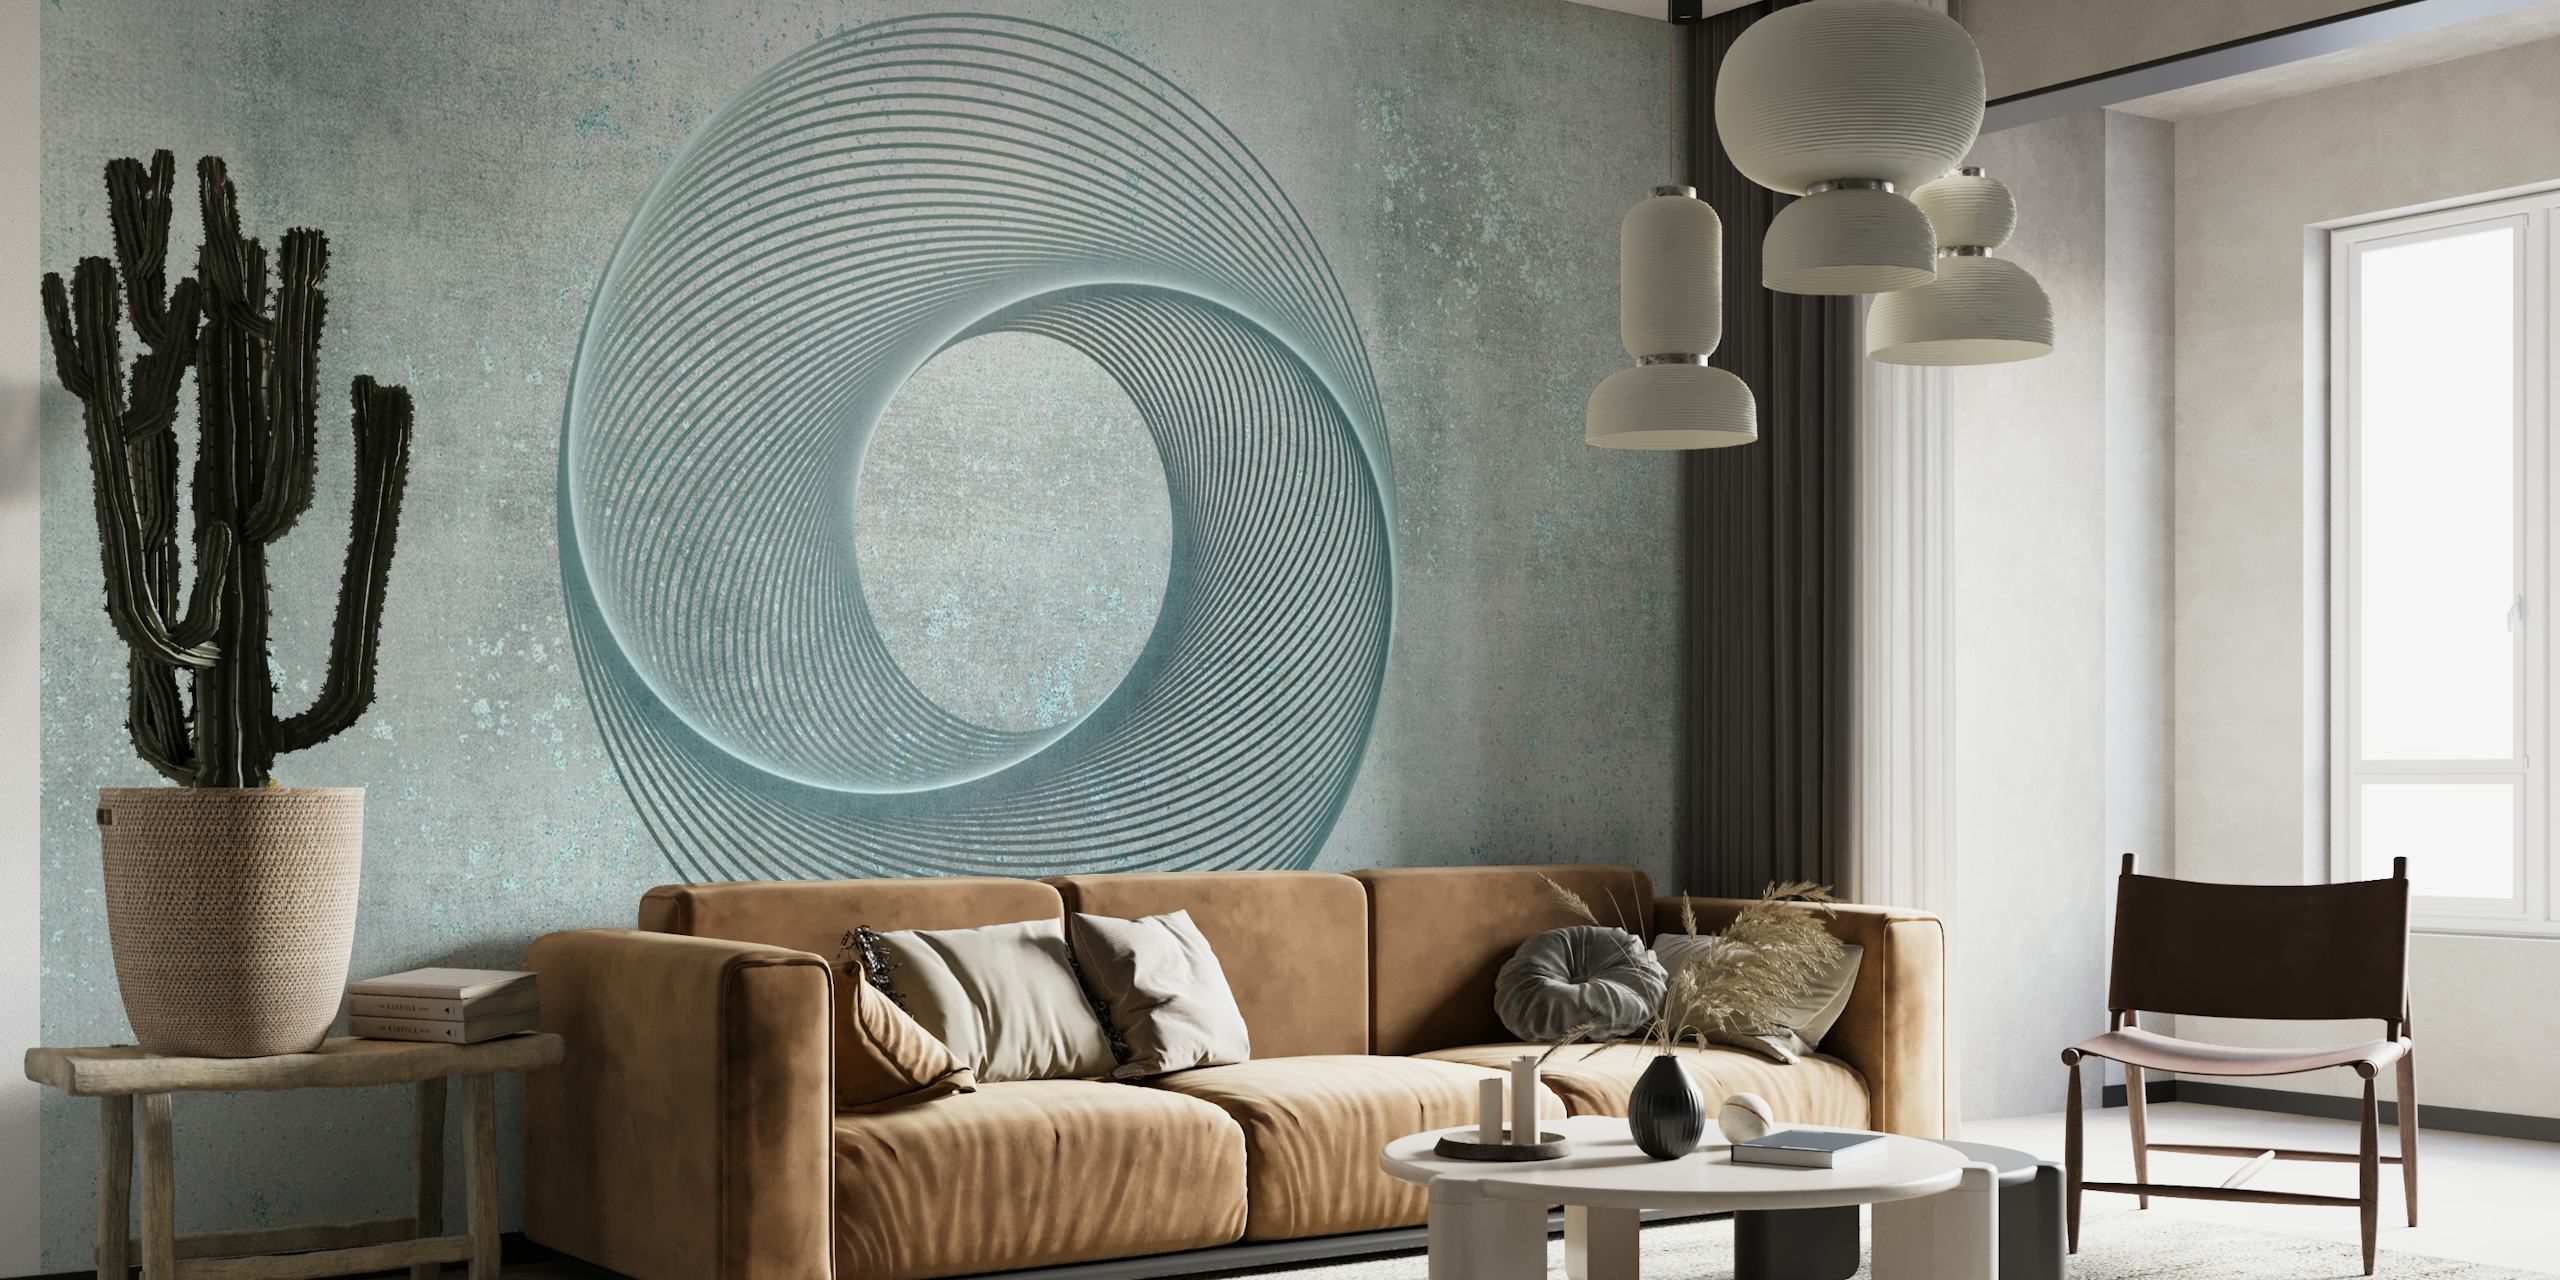 Fotomural vinílico de parede circular de arte geométrica abstrata em tons suaves